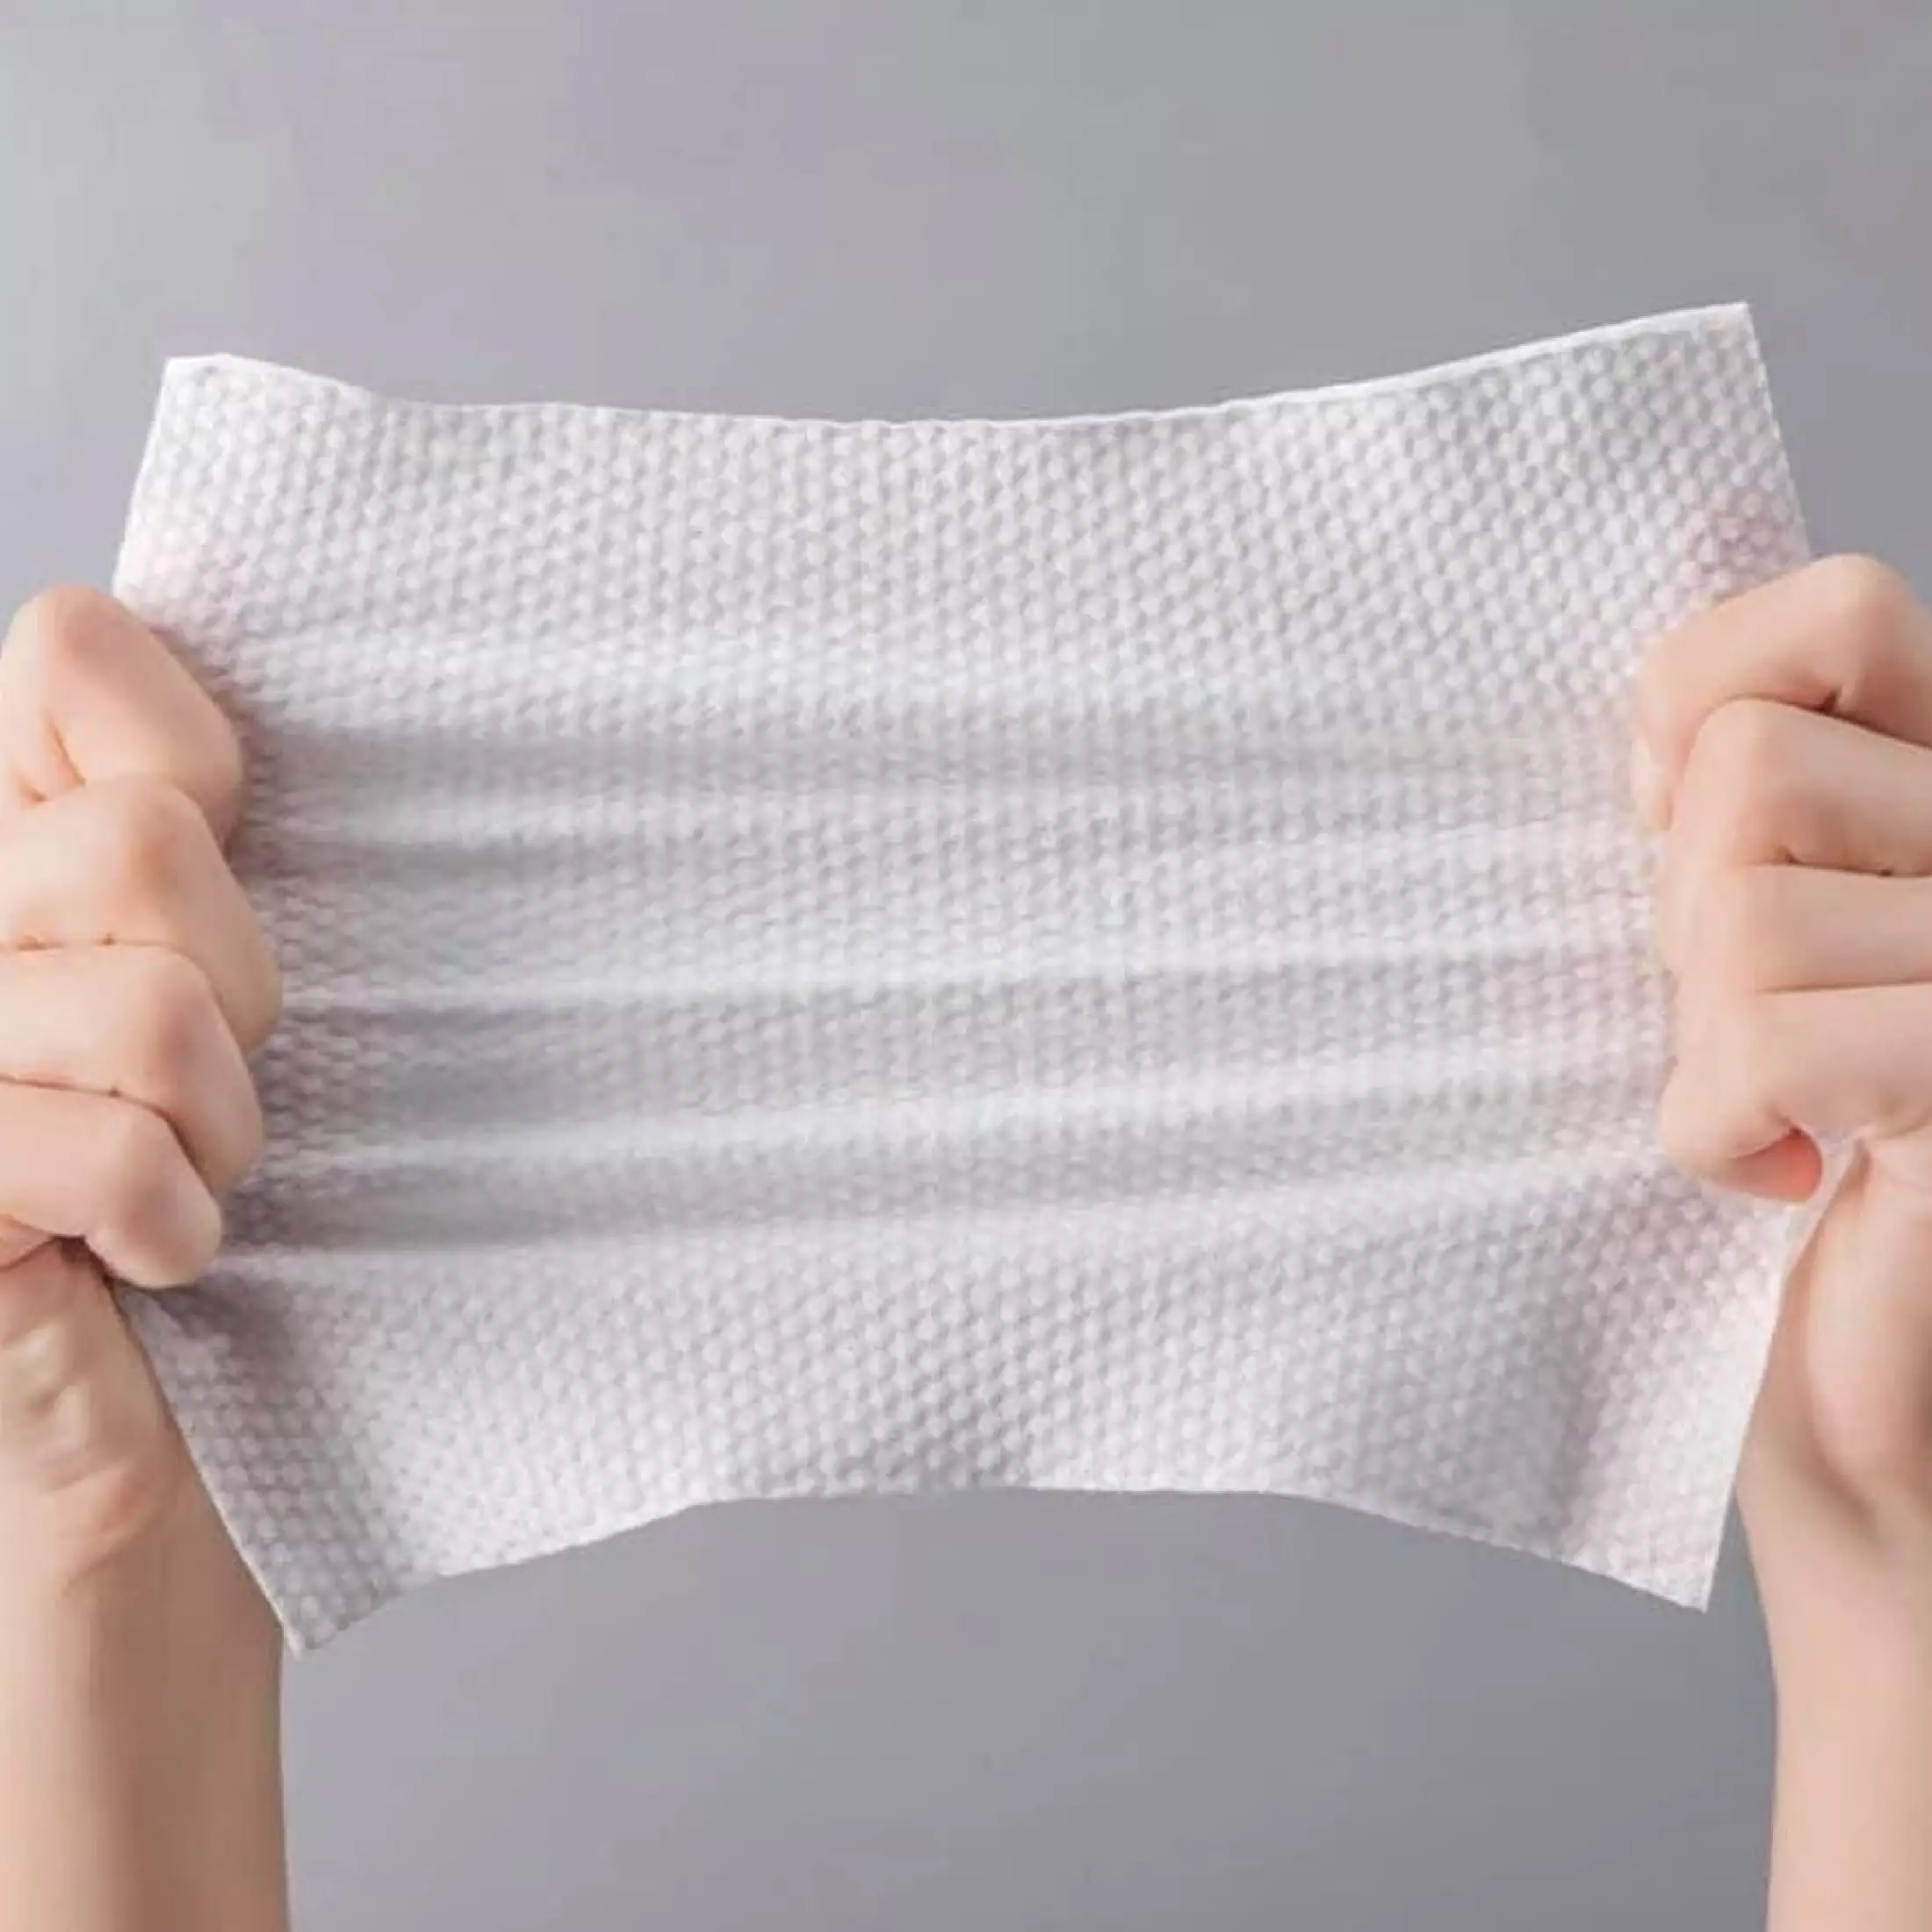 khăn giấy khô lau mặt animerry dùng 1 lần cuộn 40 miếng npp tido88 7